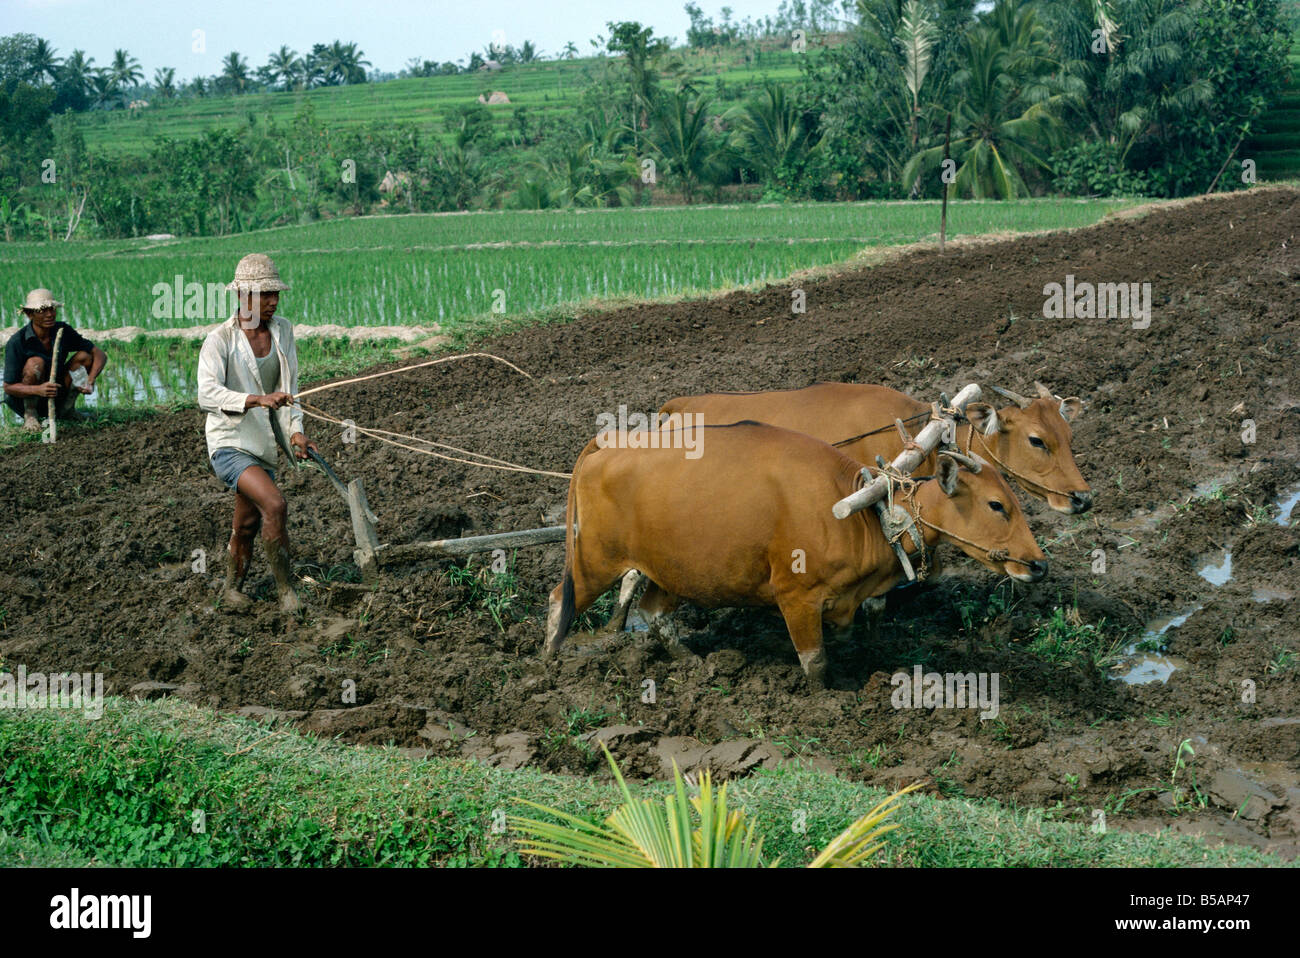 Homme labourant un champ avec deux taureaux en Bali Indonésie Asie Asie du sud-est Banque D'Images